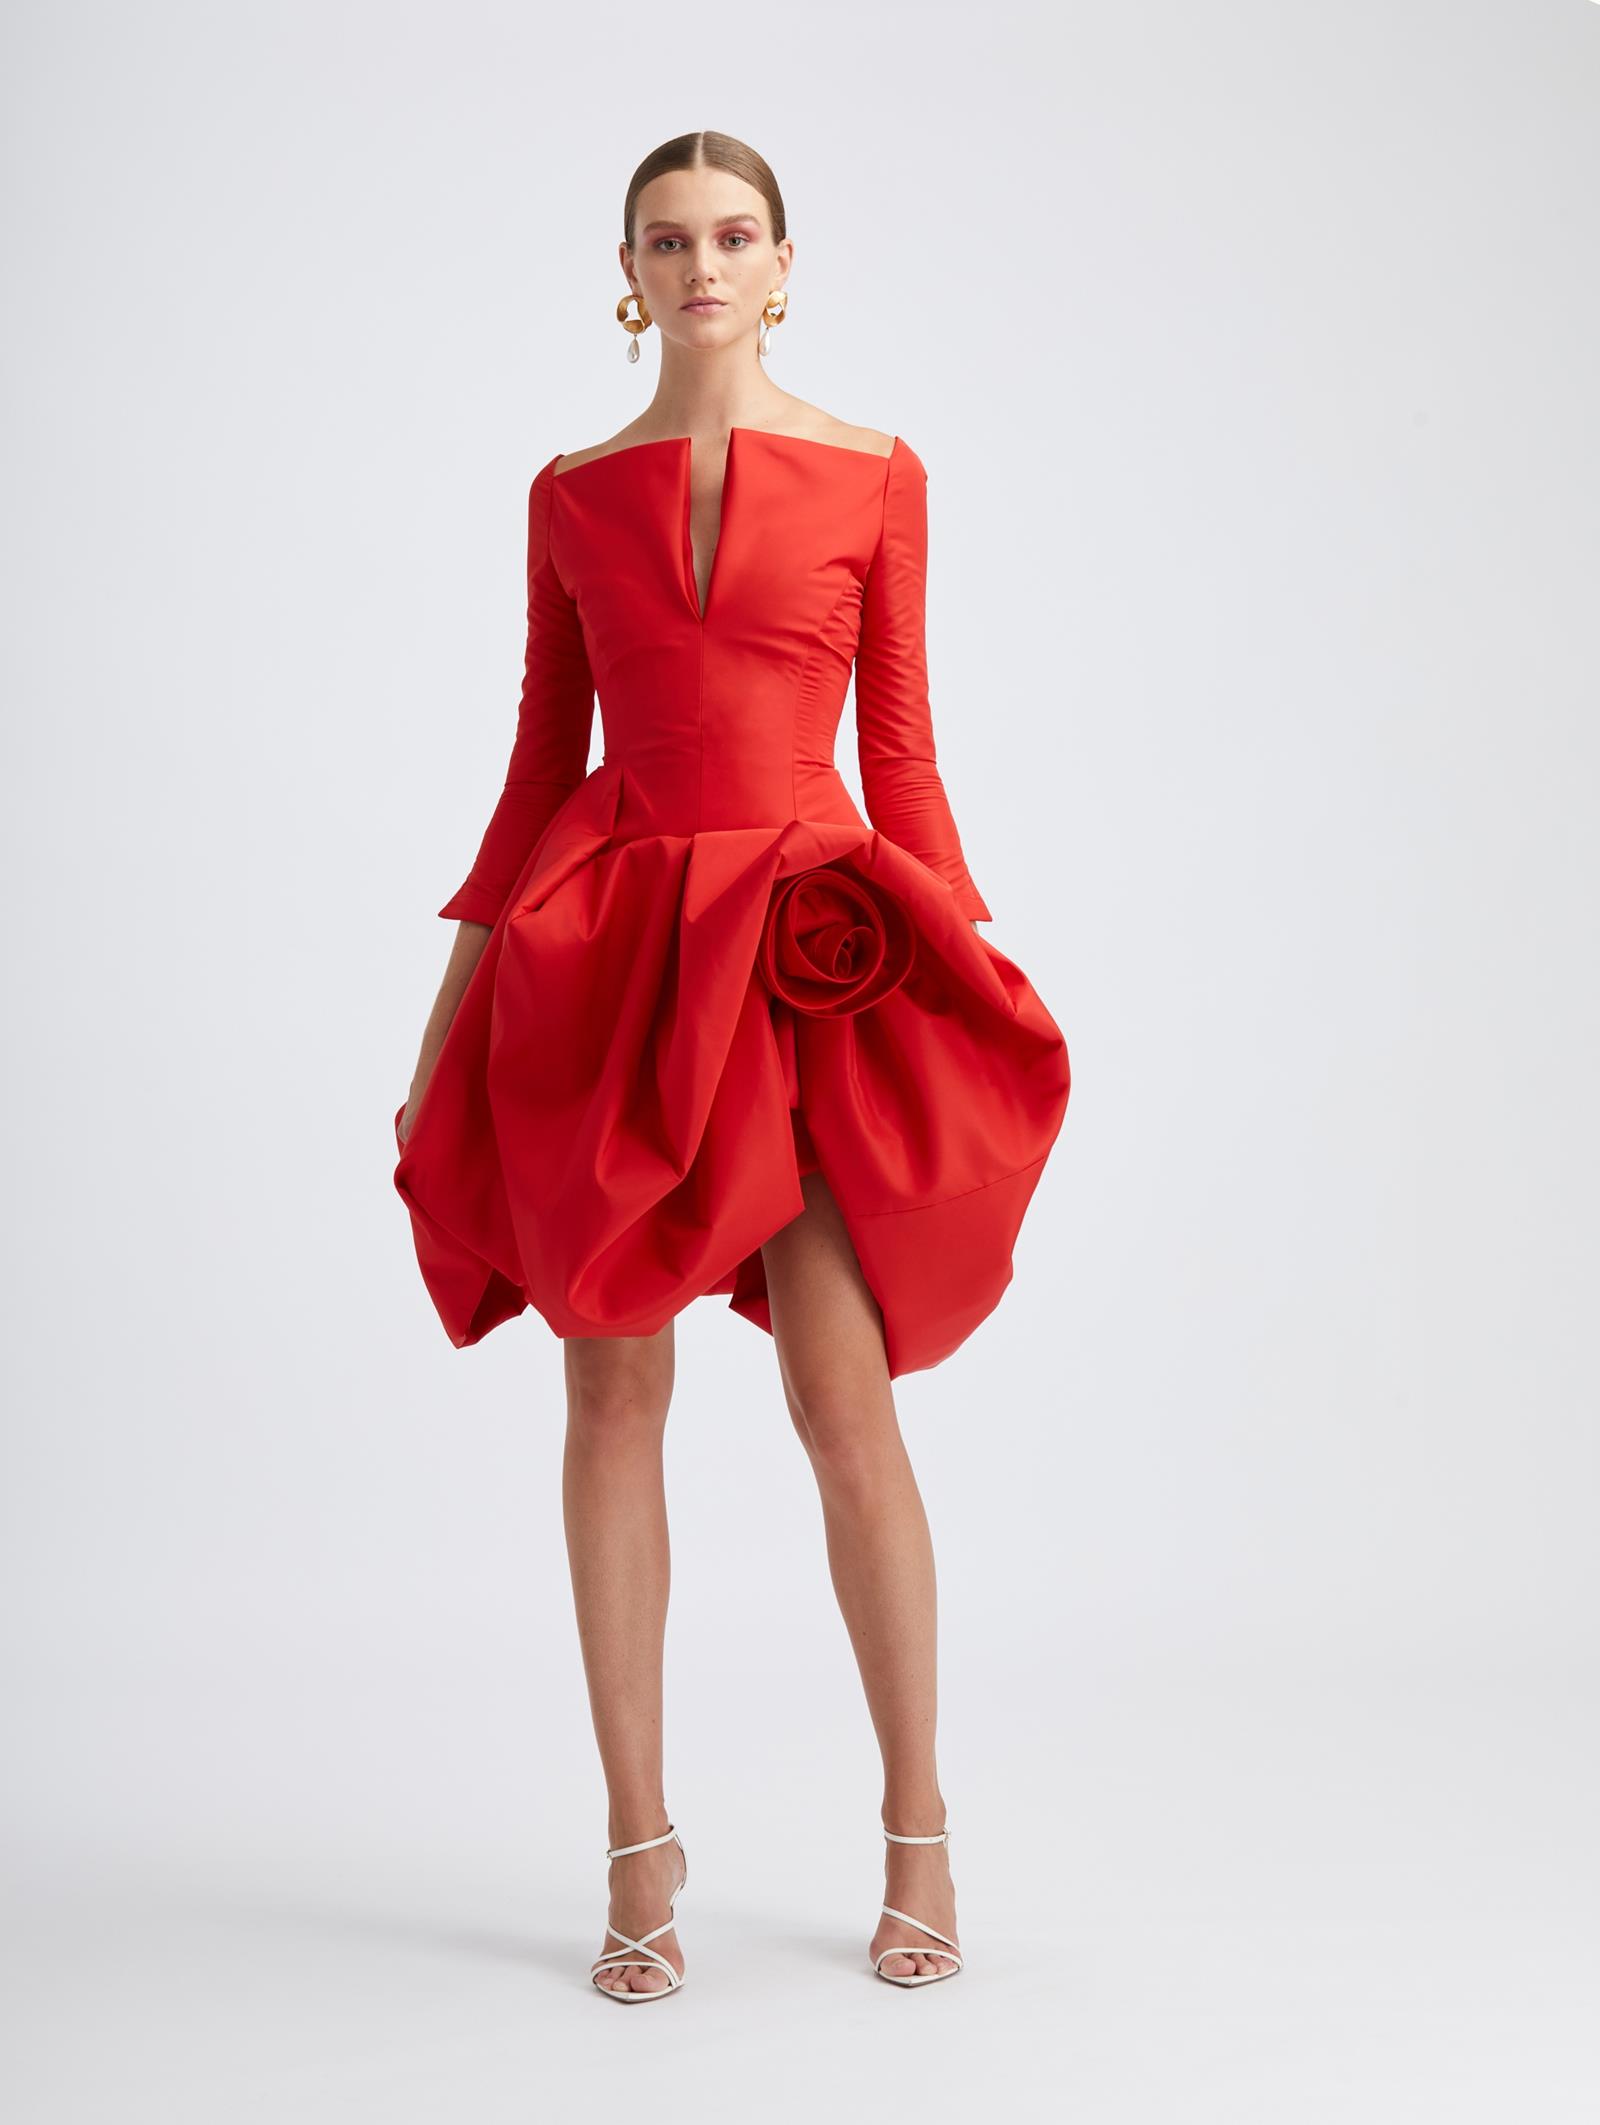 Oscar de la Renta red Dress 2021